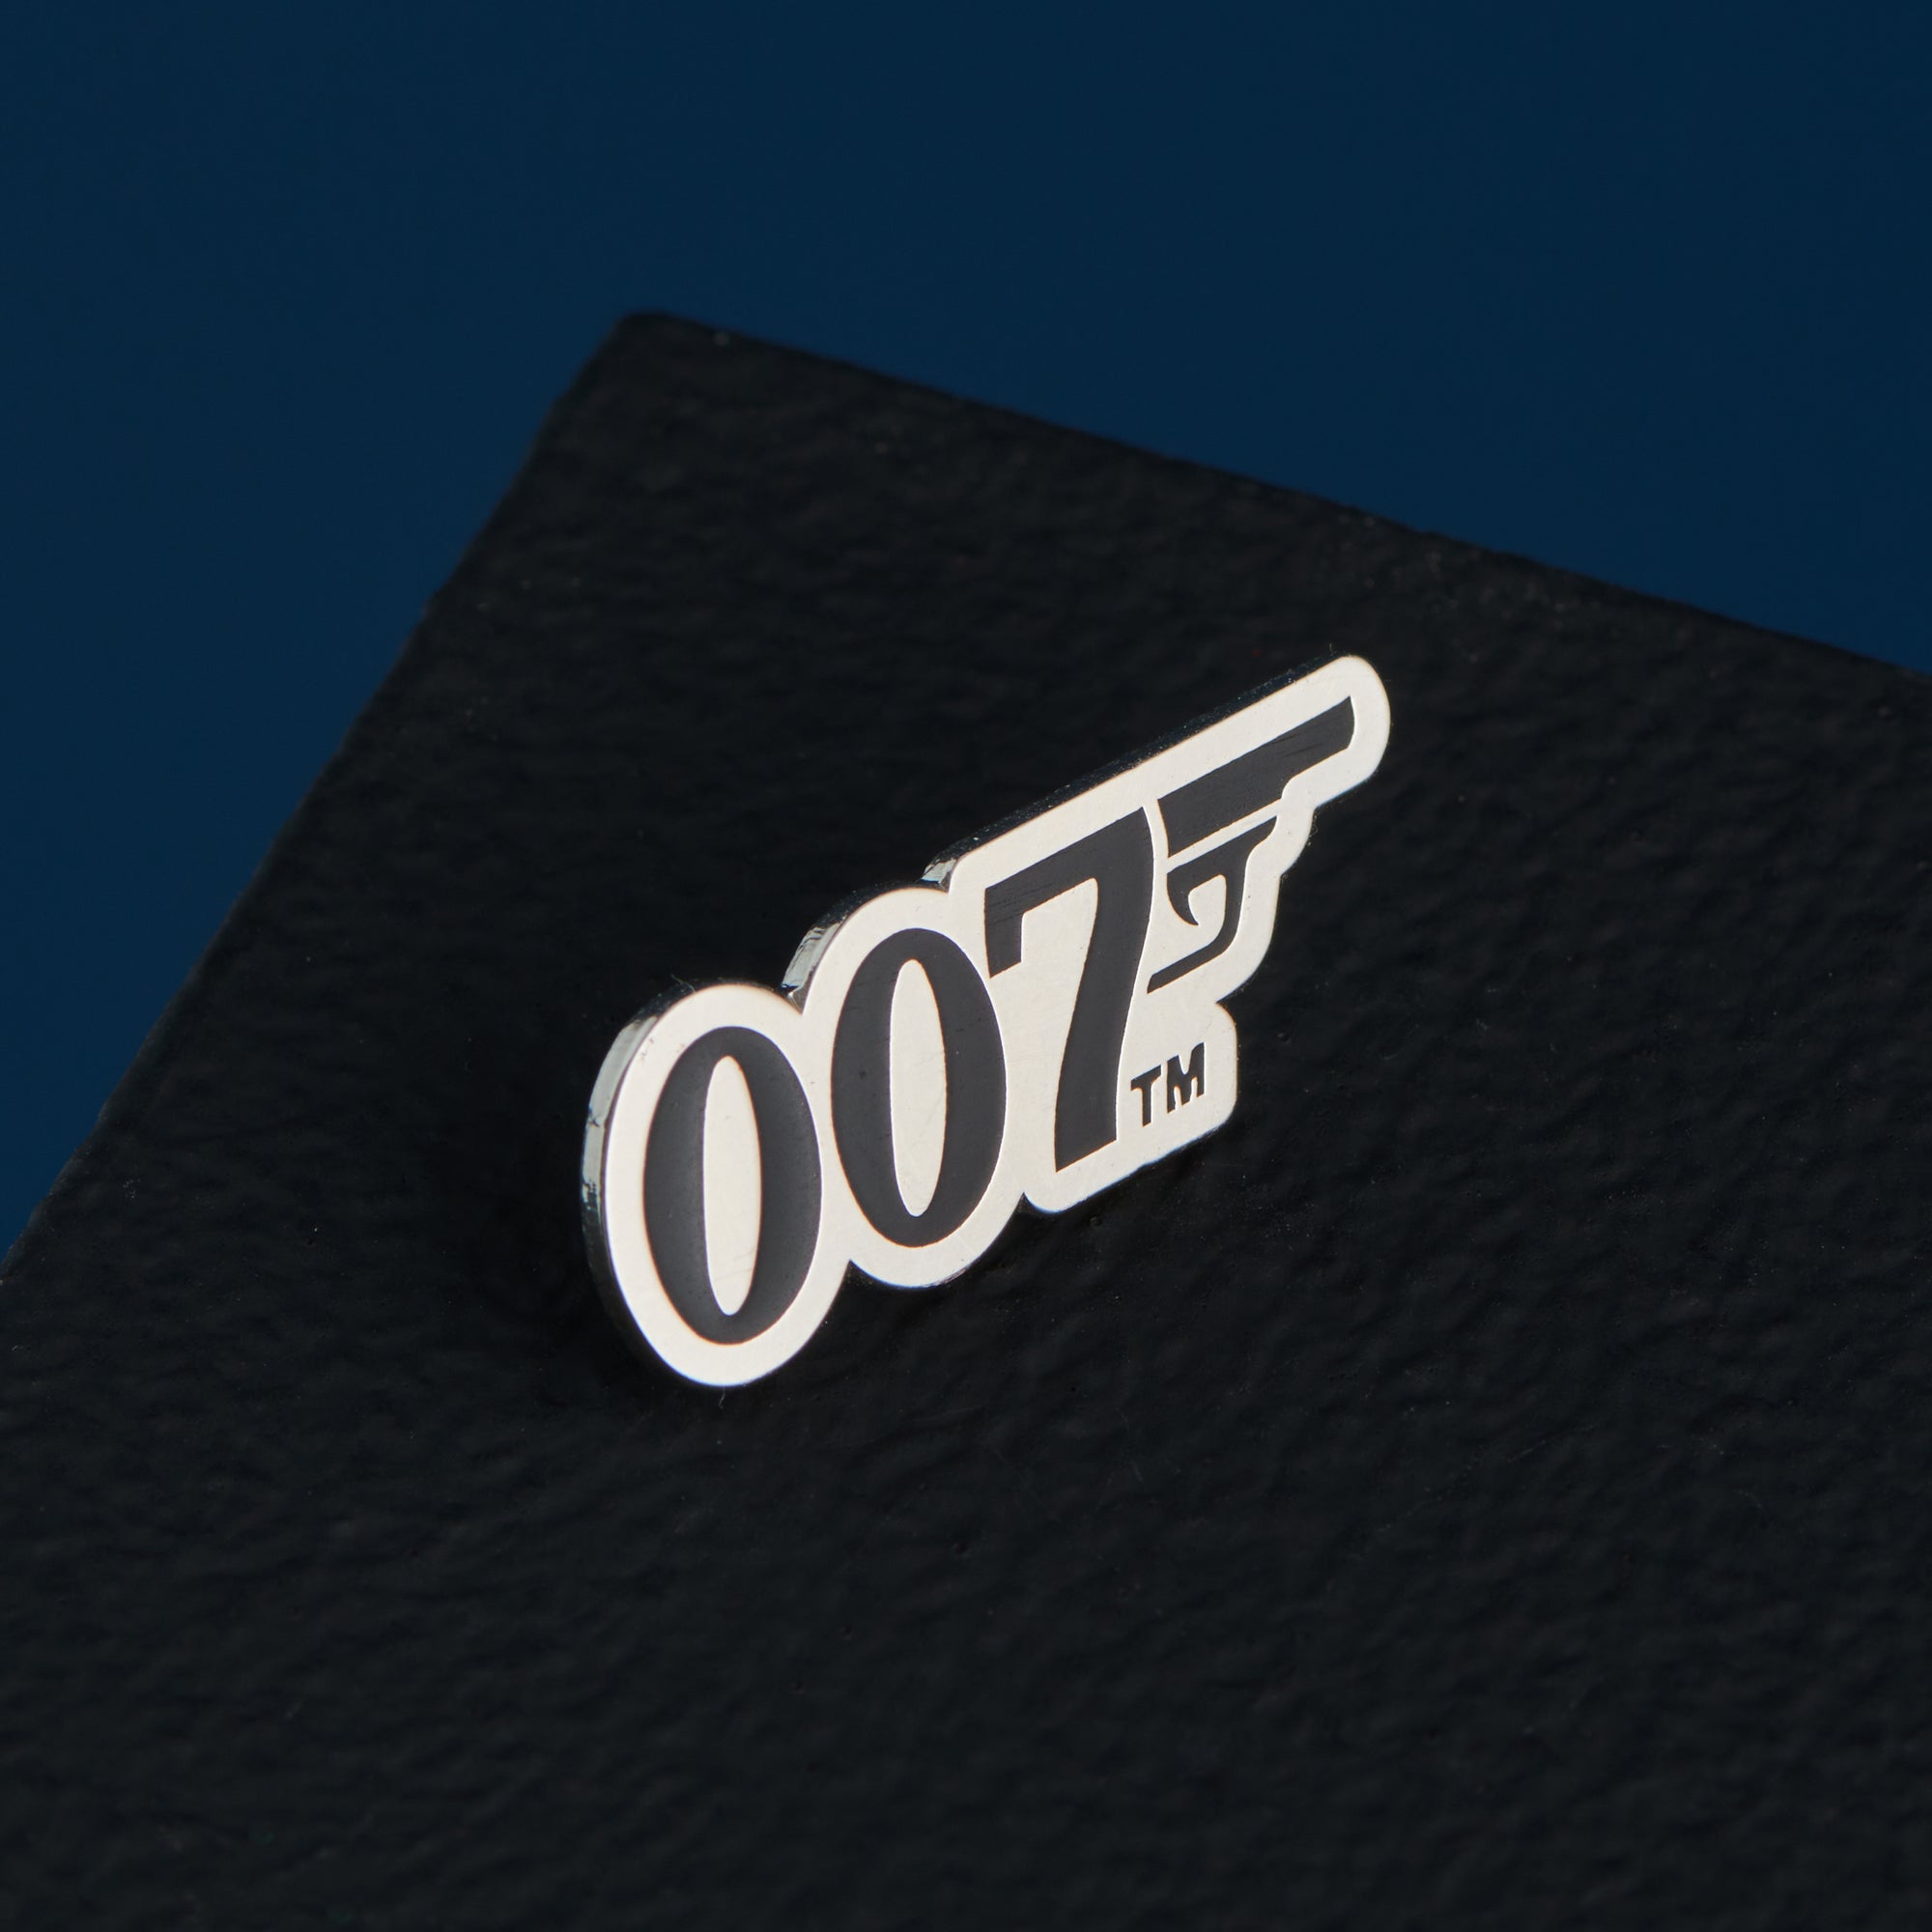 Personalised James Bond 007 ID Card